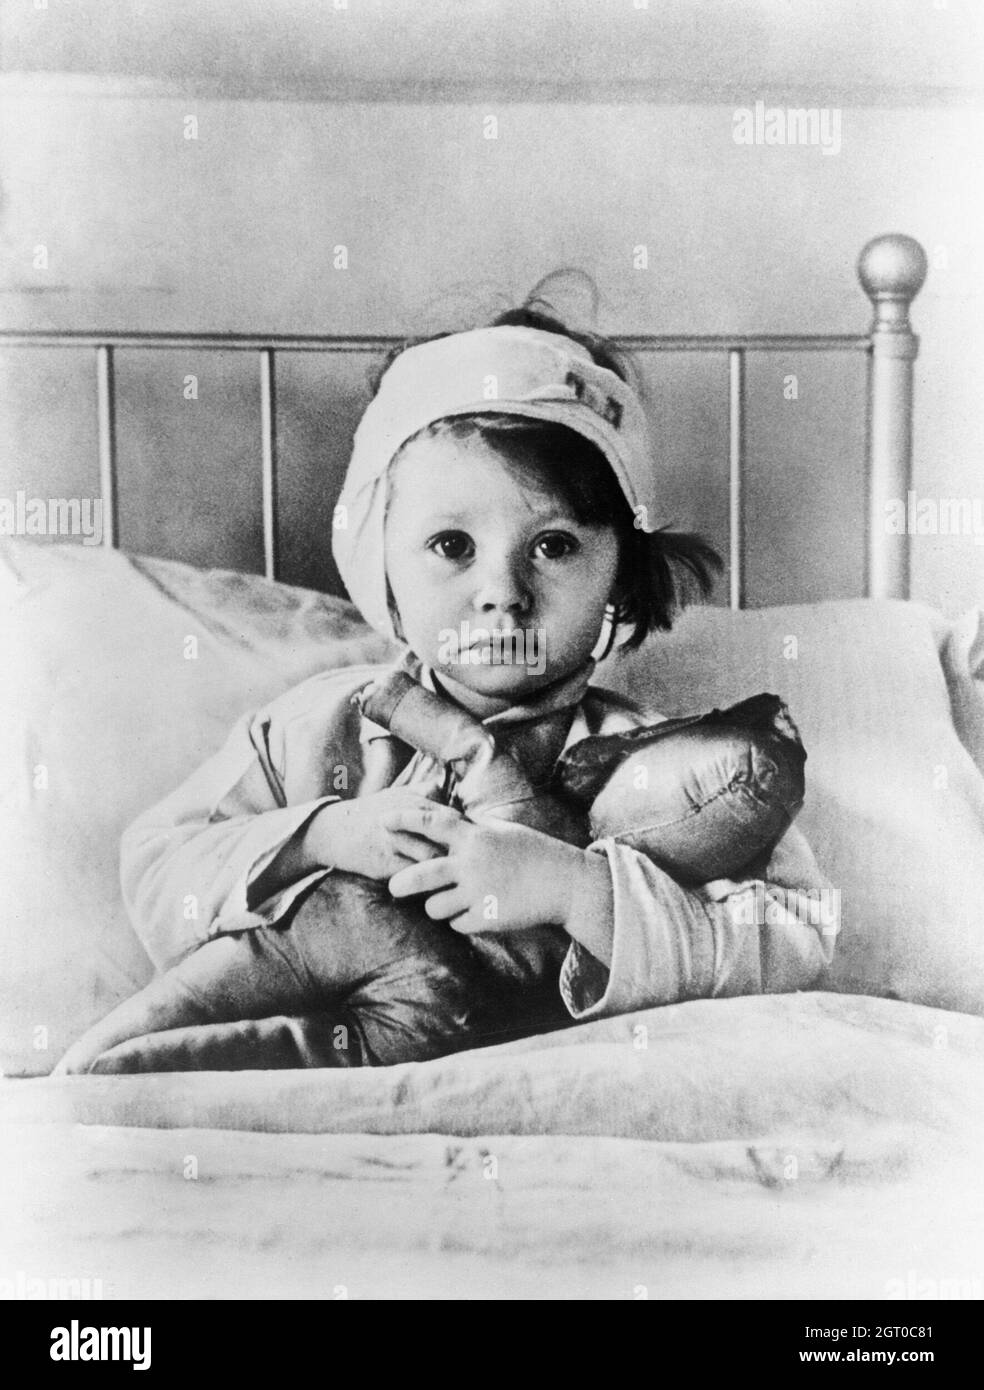 Eileen Dunne, âgée de trois ans, s'assoit au lit avec sa poupée à l'hôpital pour enfants de Great Ormond Street, après avoir été blessée lors d'un raid aérien à Londres en septembre 1940. Photo de Cecil Beaton Banque D'Images